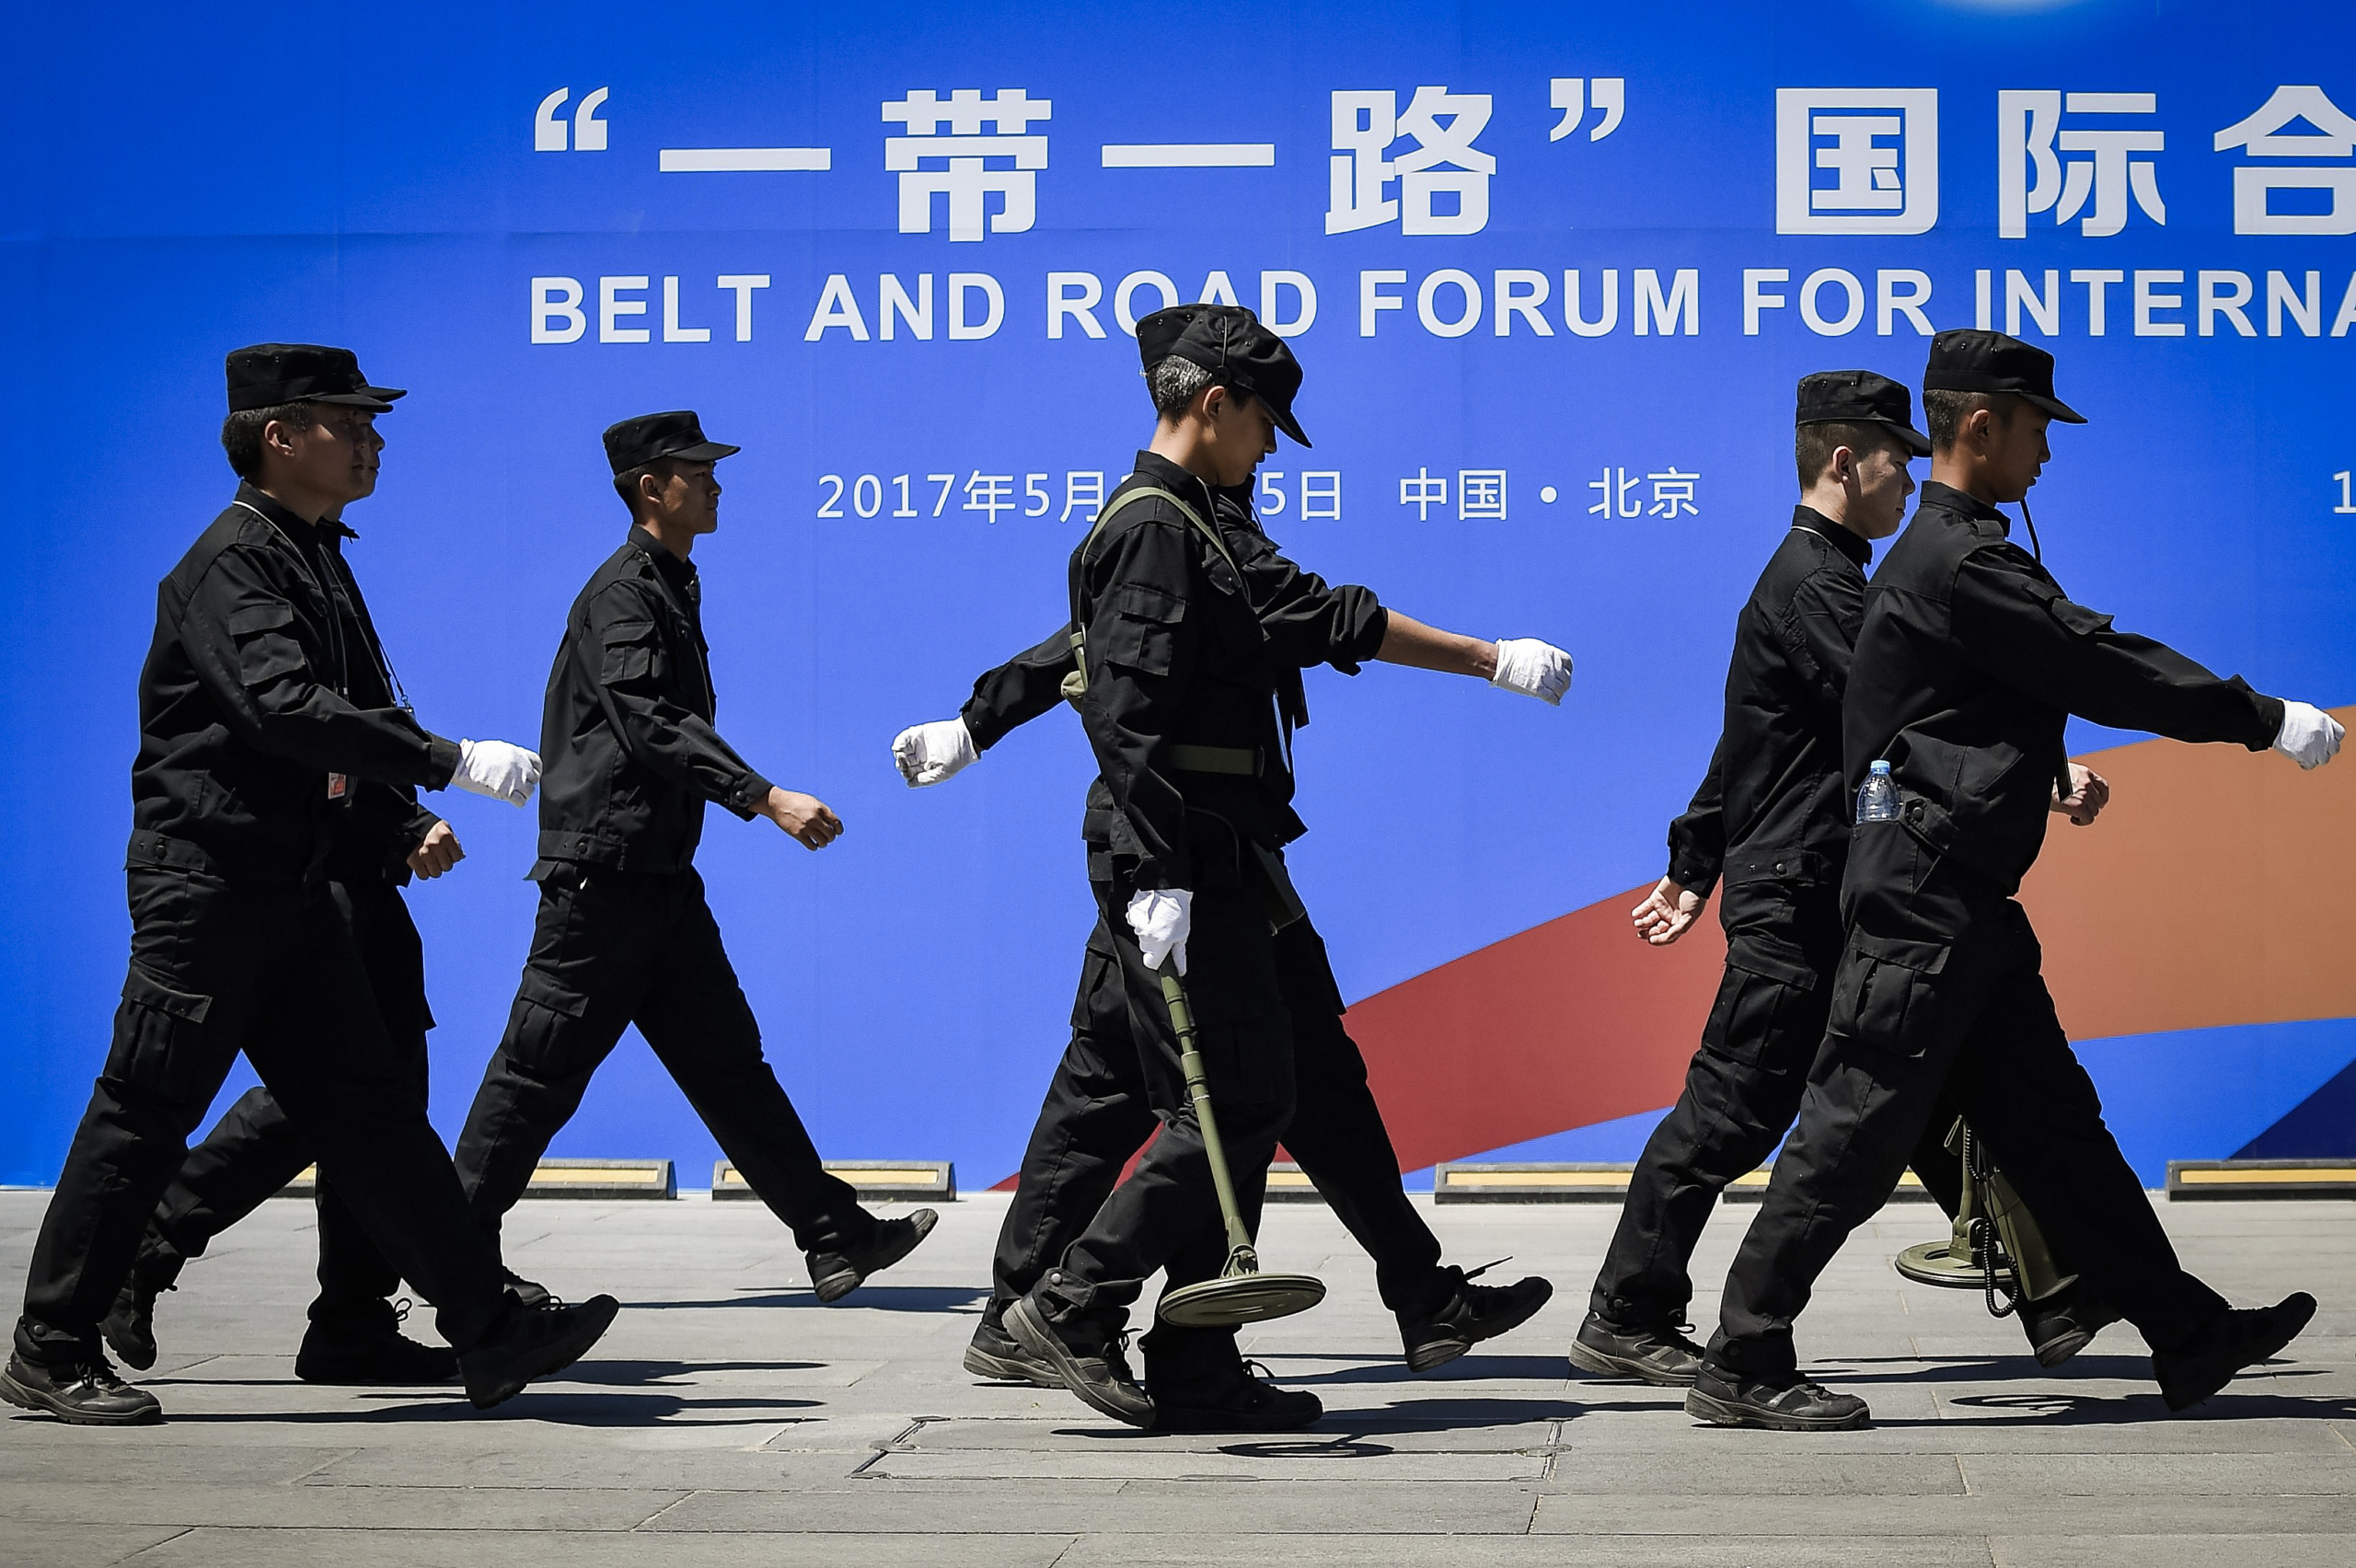 Các nhân viên bảo vệ đi ngang qua một tấm bảng quảng cáo cho Diễn đàn Hợp tác Quốc tế Vành đai và Con đường tại địa điểm tổ chức diễn đàn ở Bắc Kinh vào ngày 13/05/2017. (Ảnh: Wang Zhao/AFP qua Getty Images)